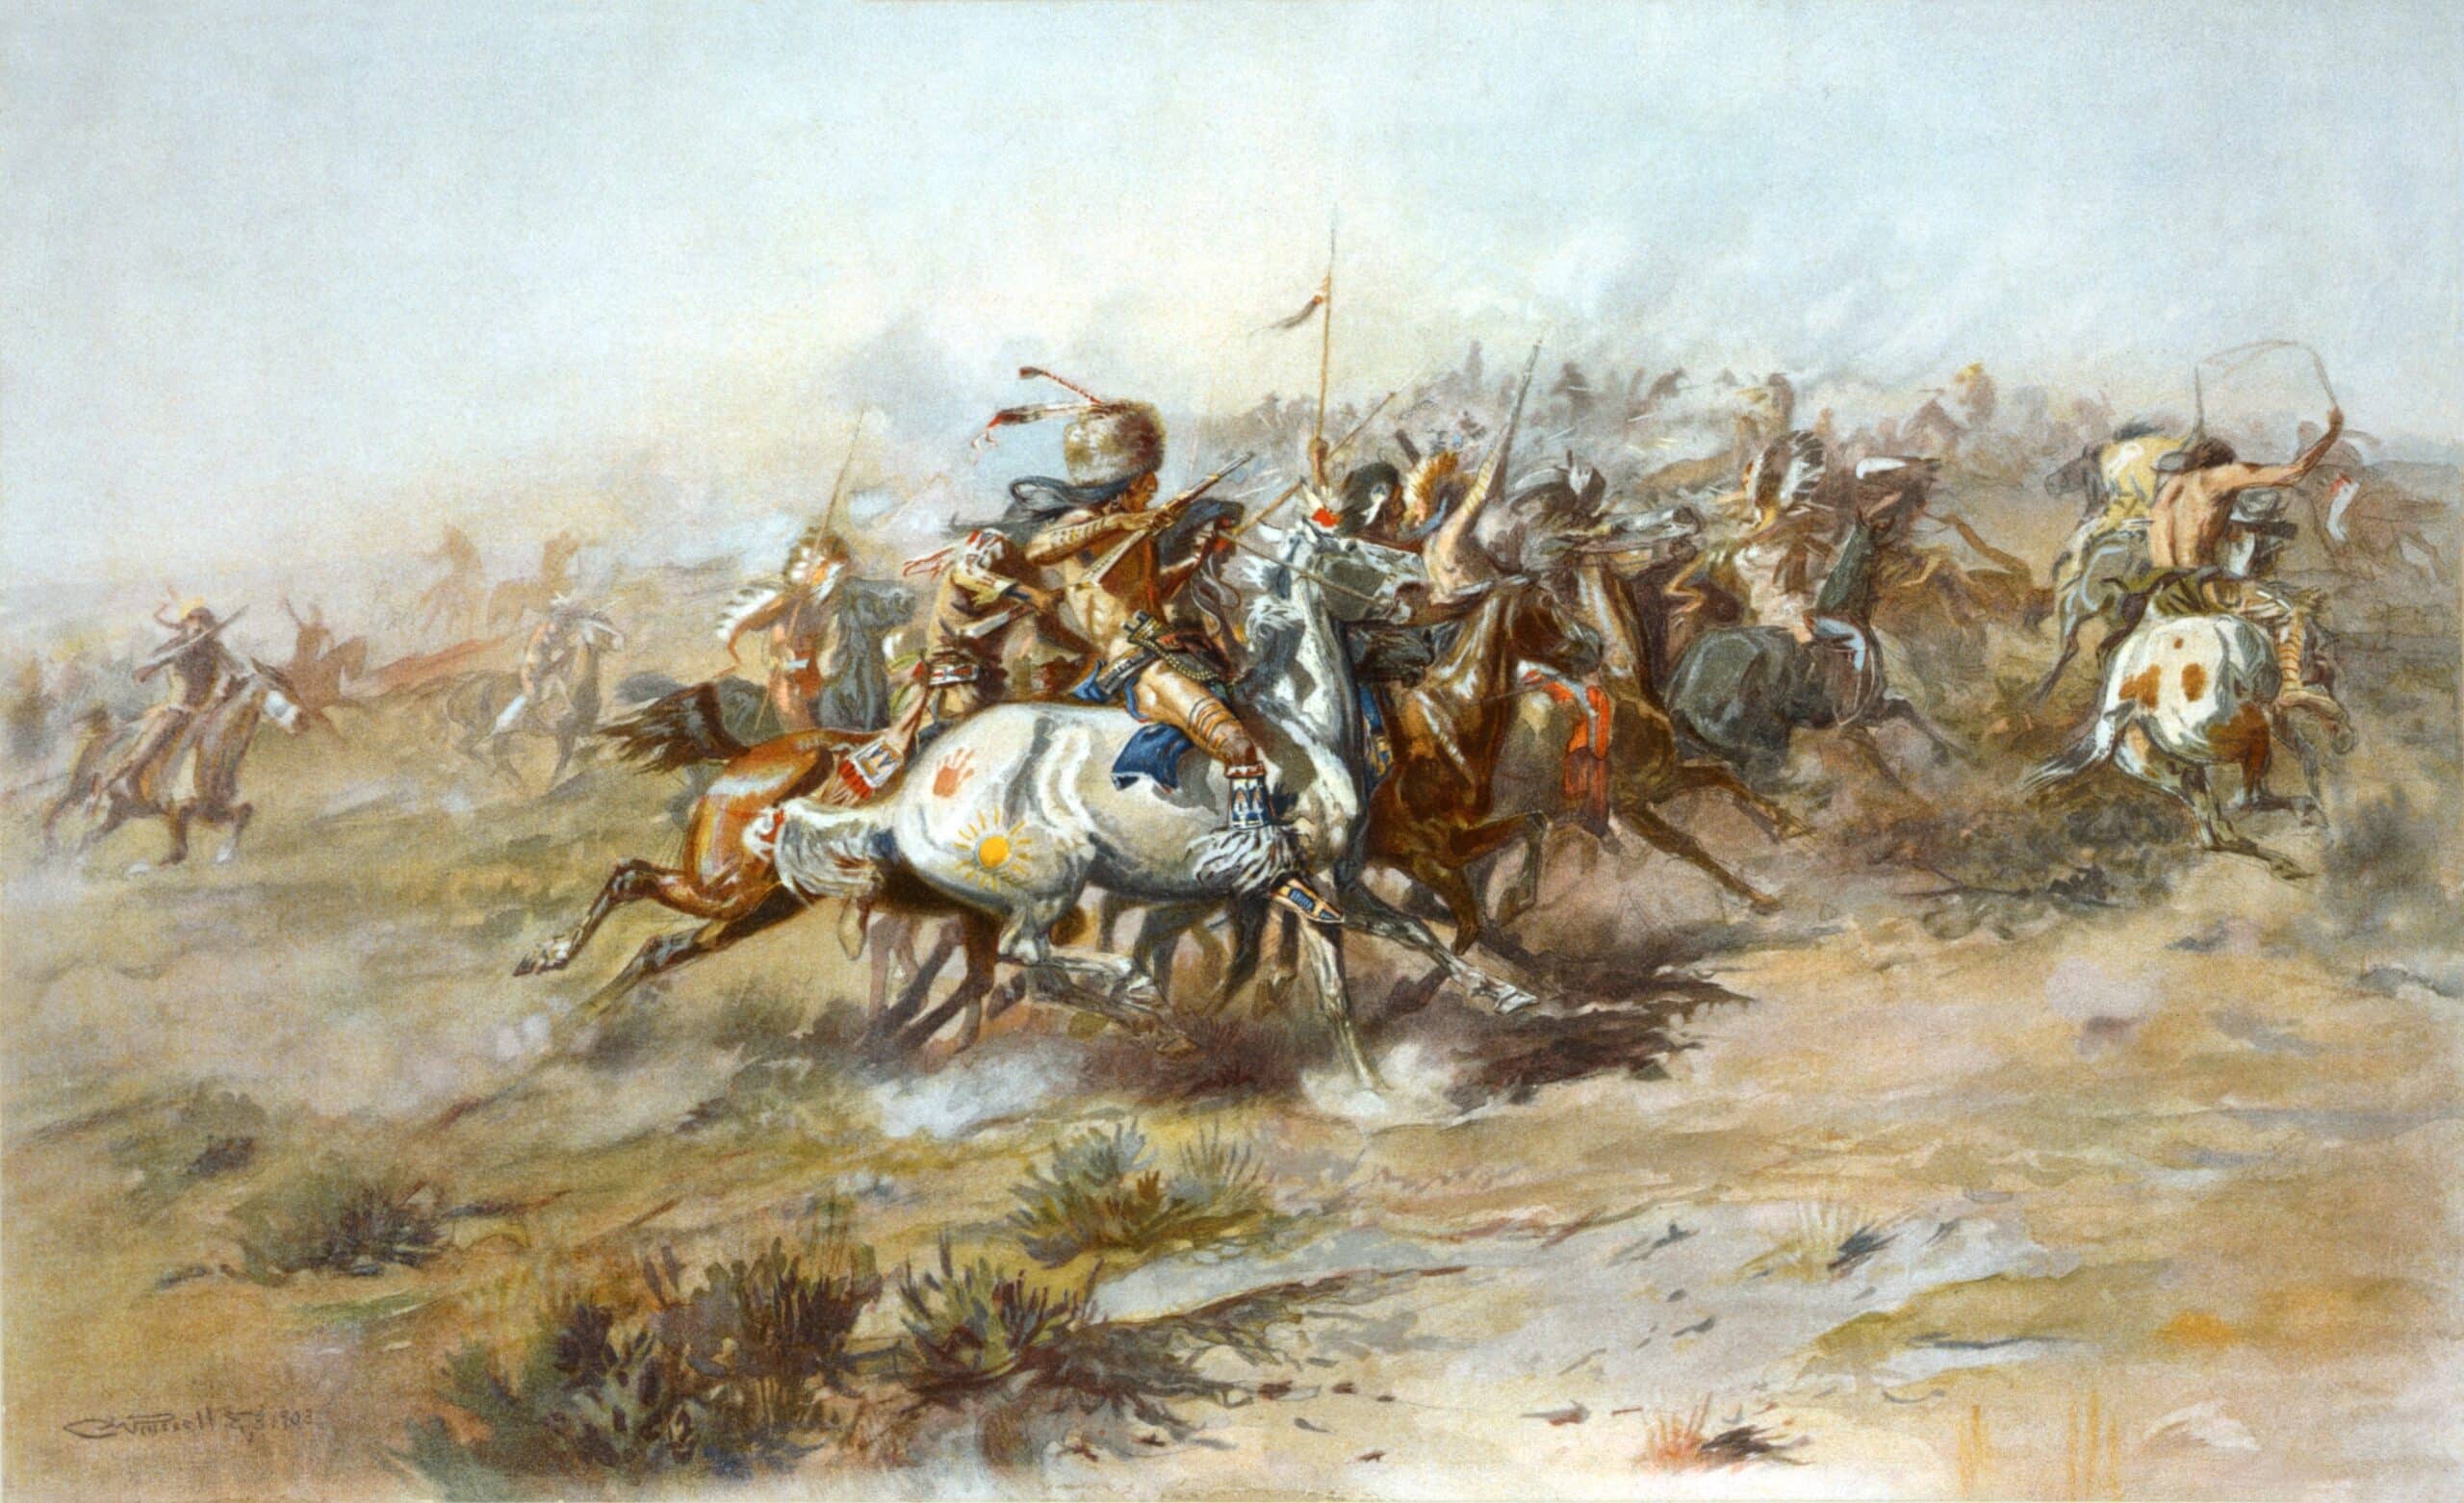 Battle of Little Big Horn